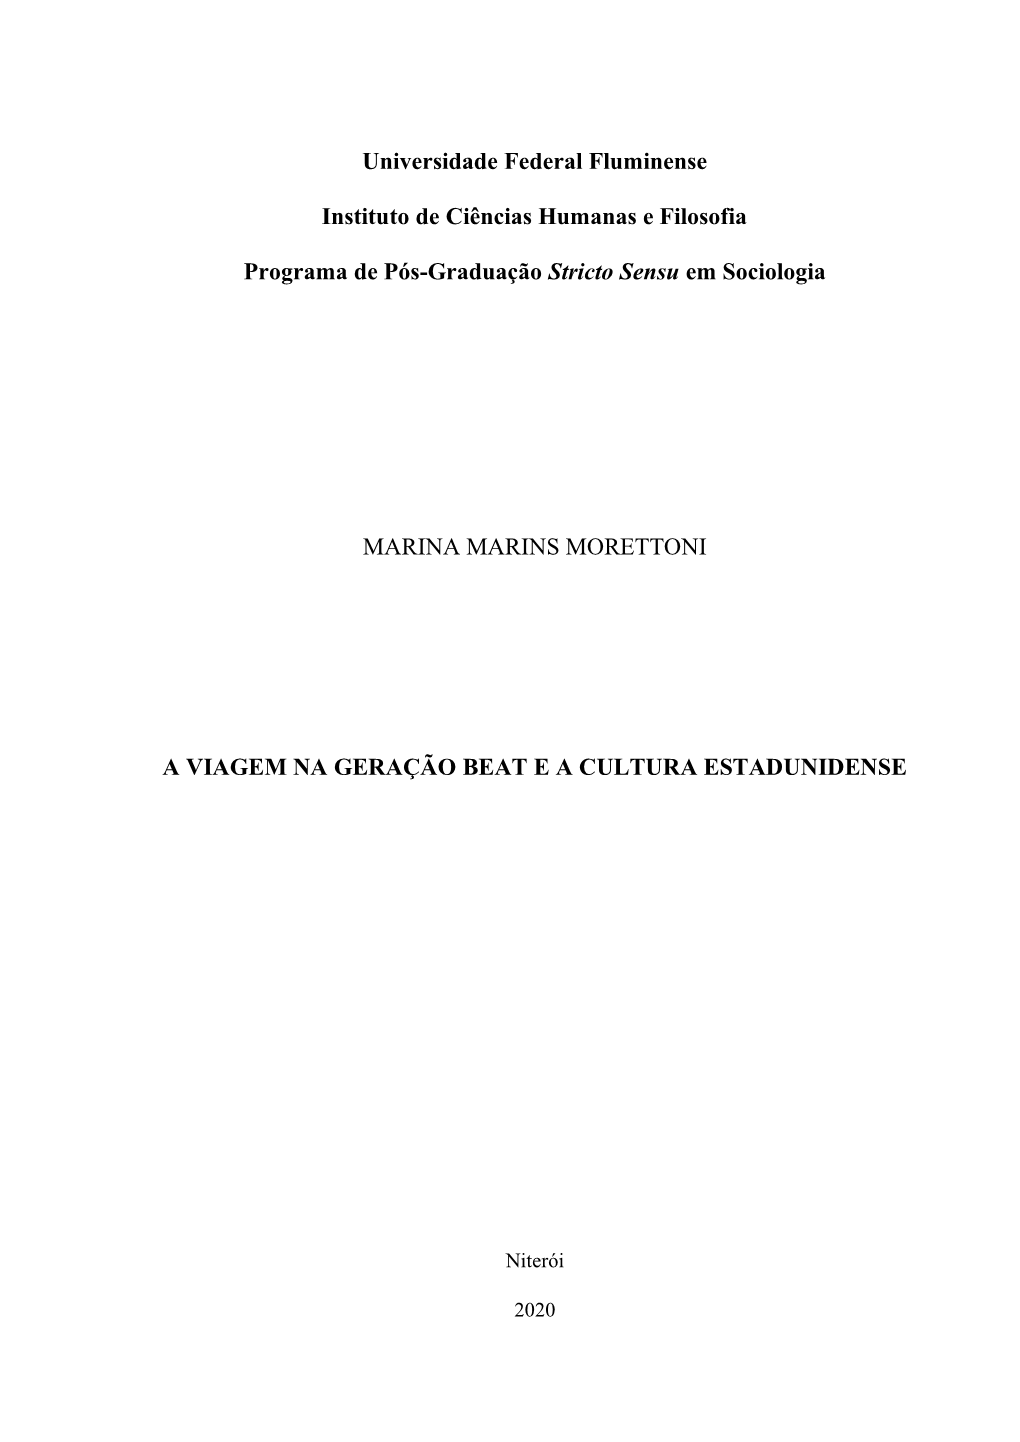 Dissertação FINAL- Marina Marins Morettoni